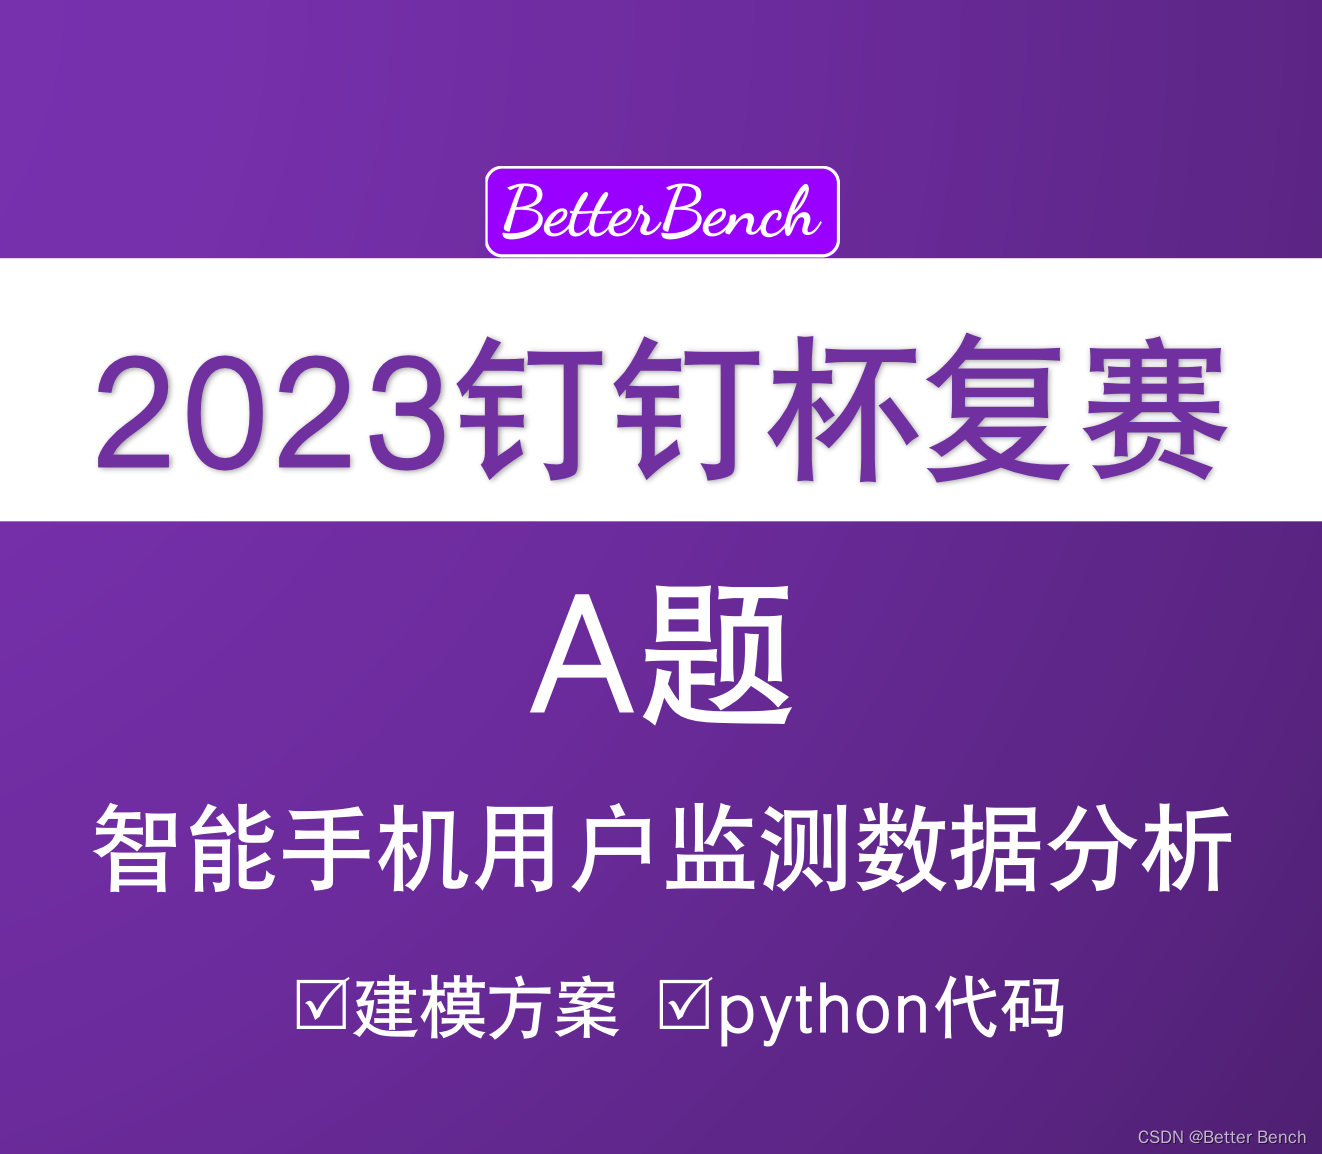 【2023钉钉杯复赛】A题 智能手机用户监测数据分析 Python代码分析